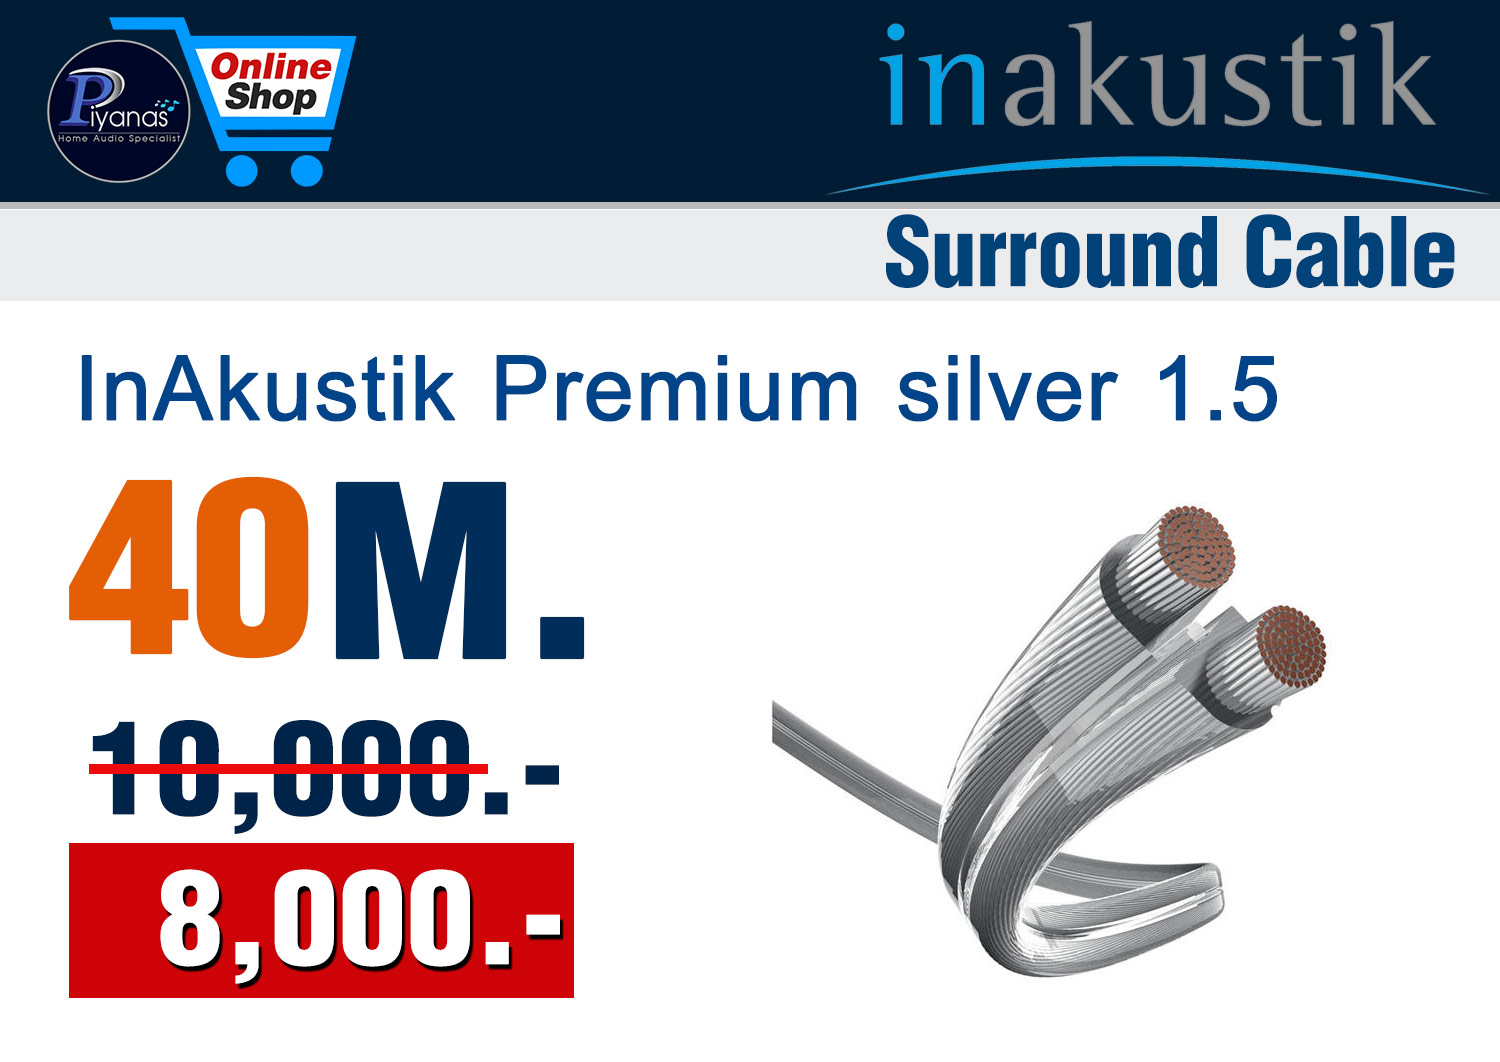 Monitor Premium silver 1.5 (40M.)